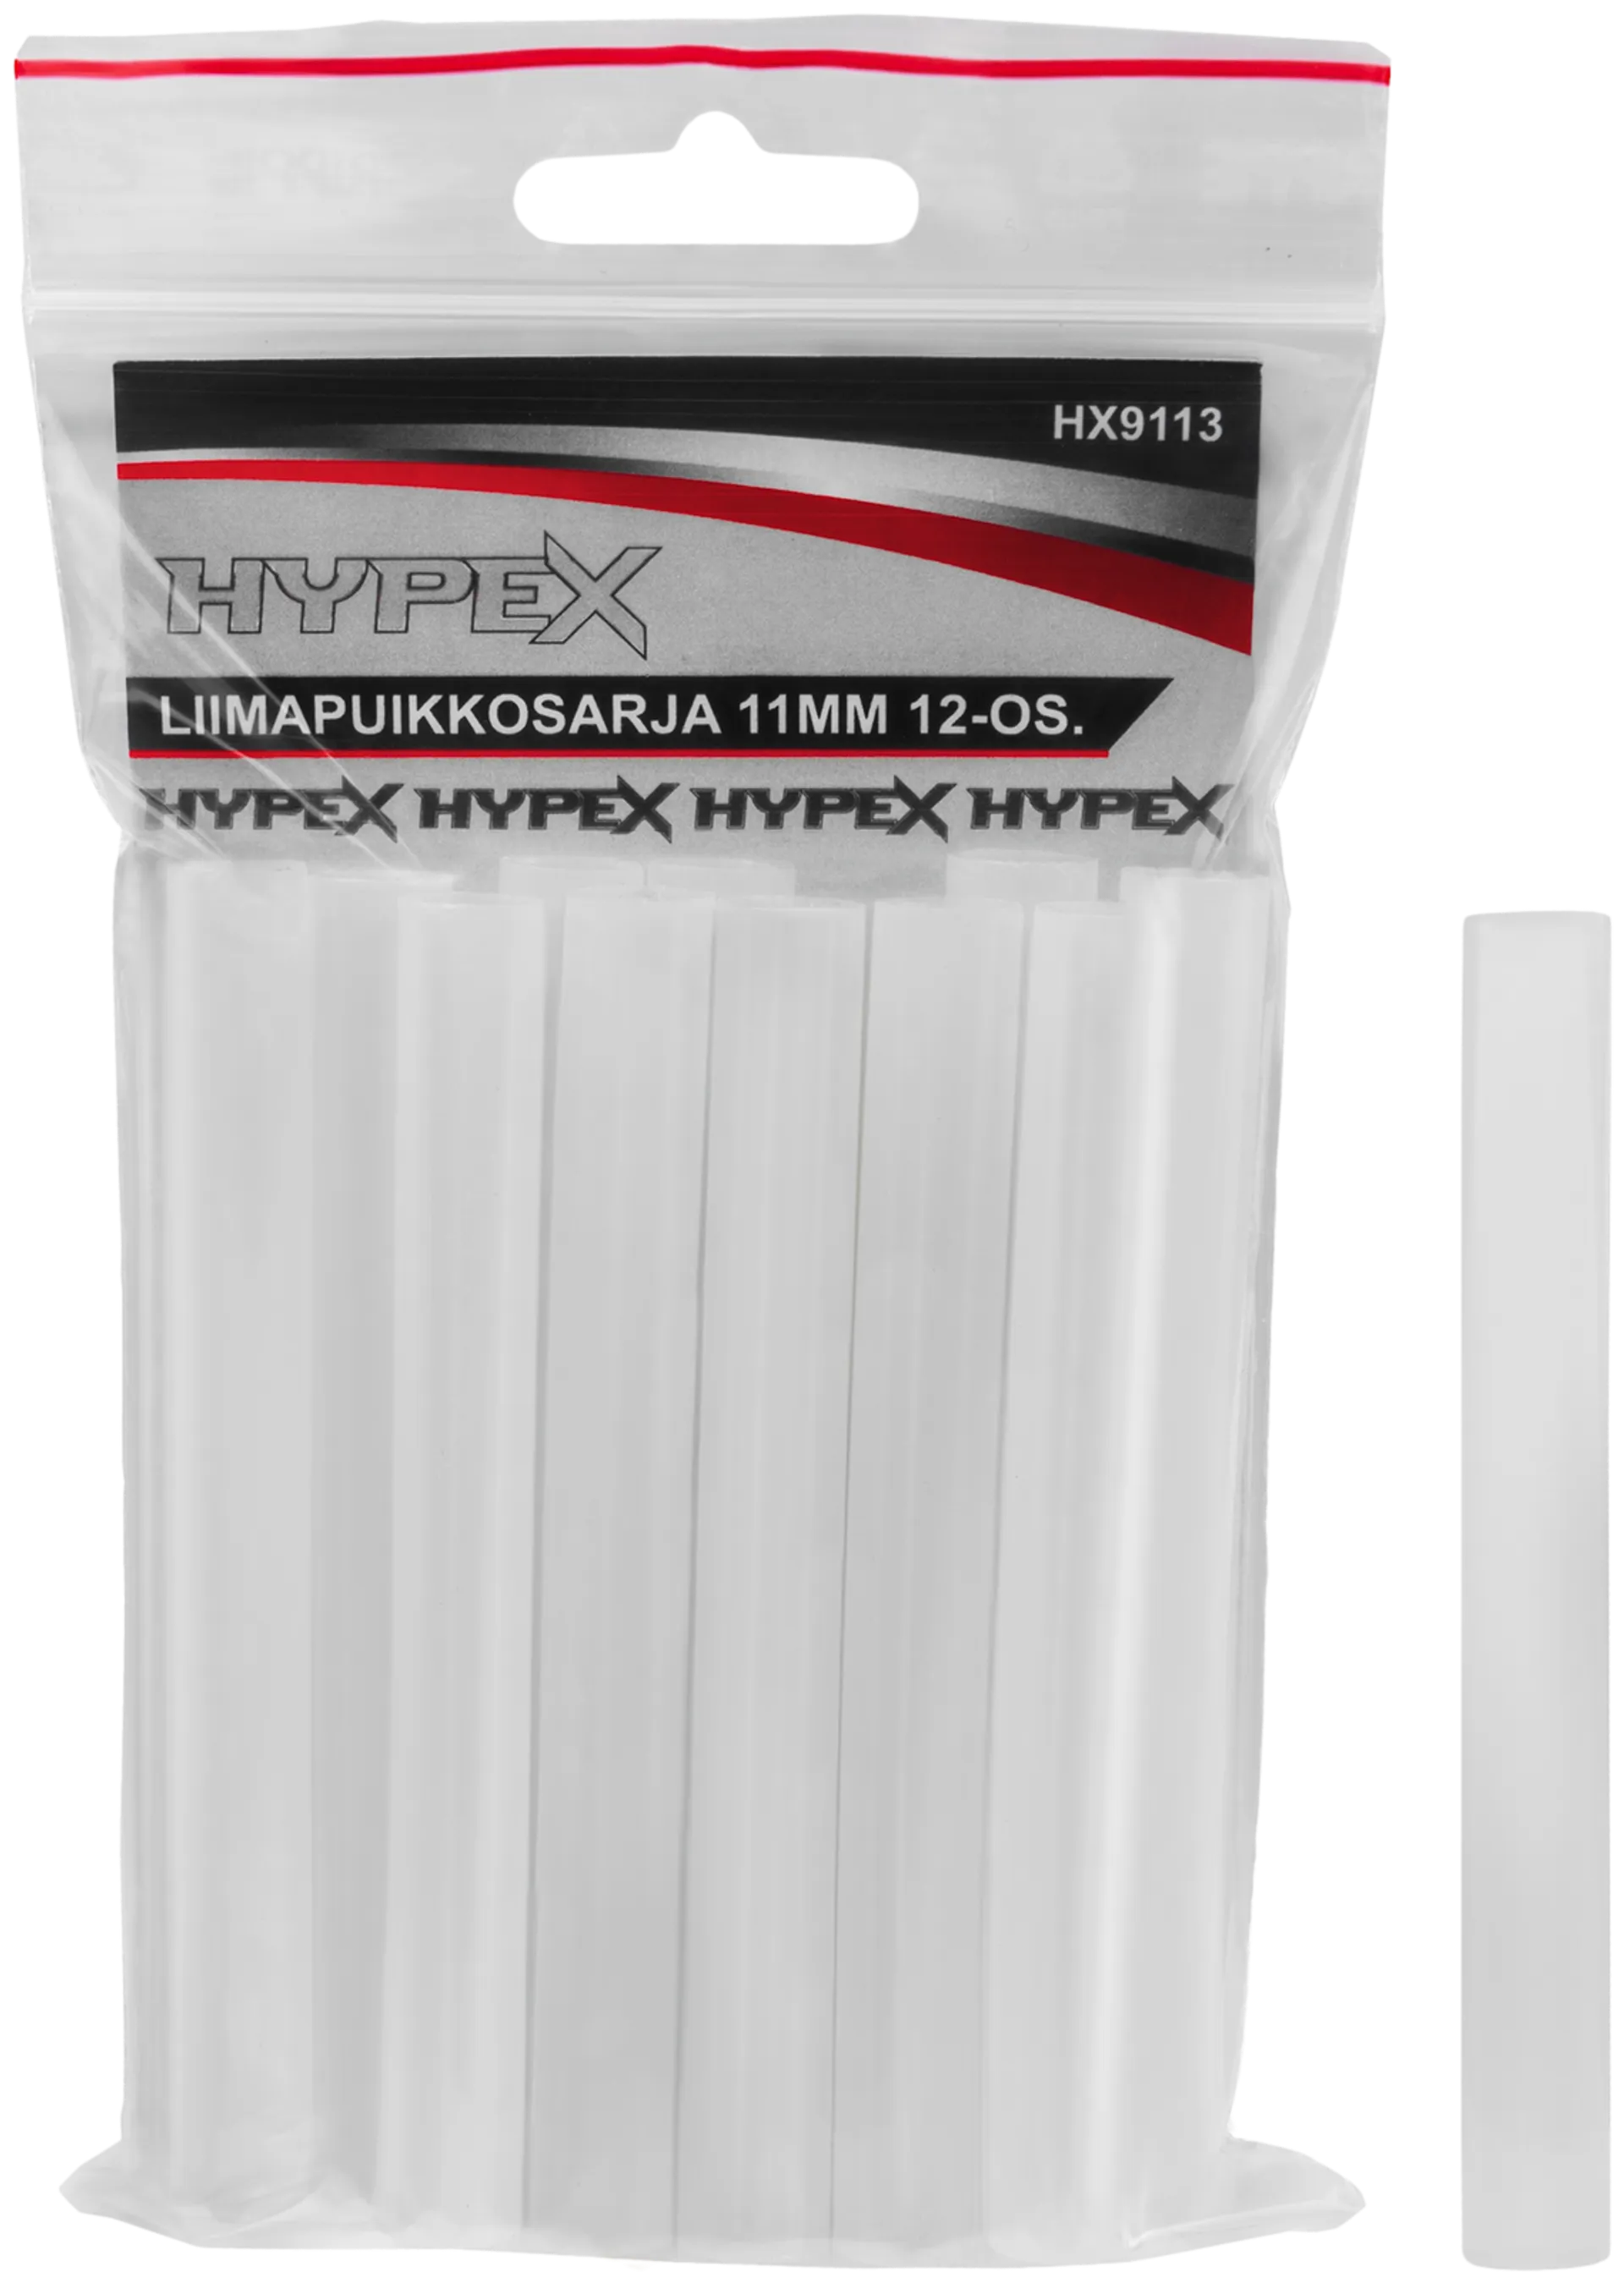 Hypex liimapuikksarja 11mm 12-os.